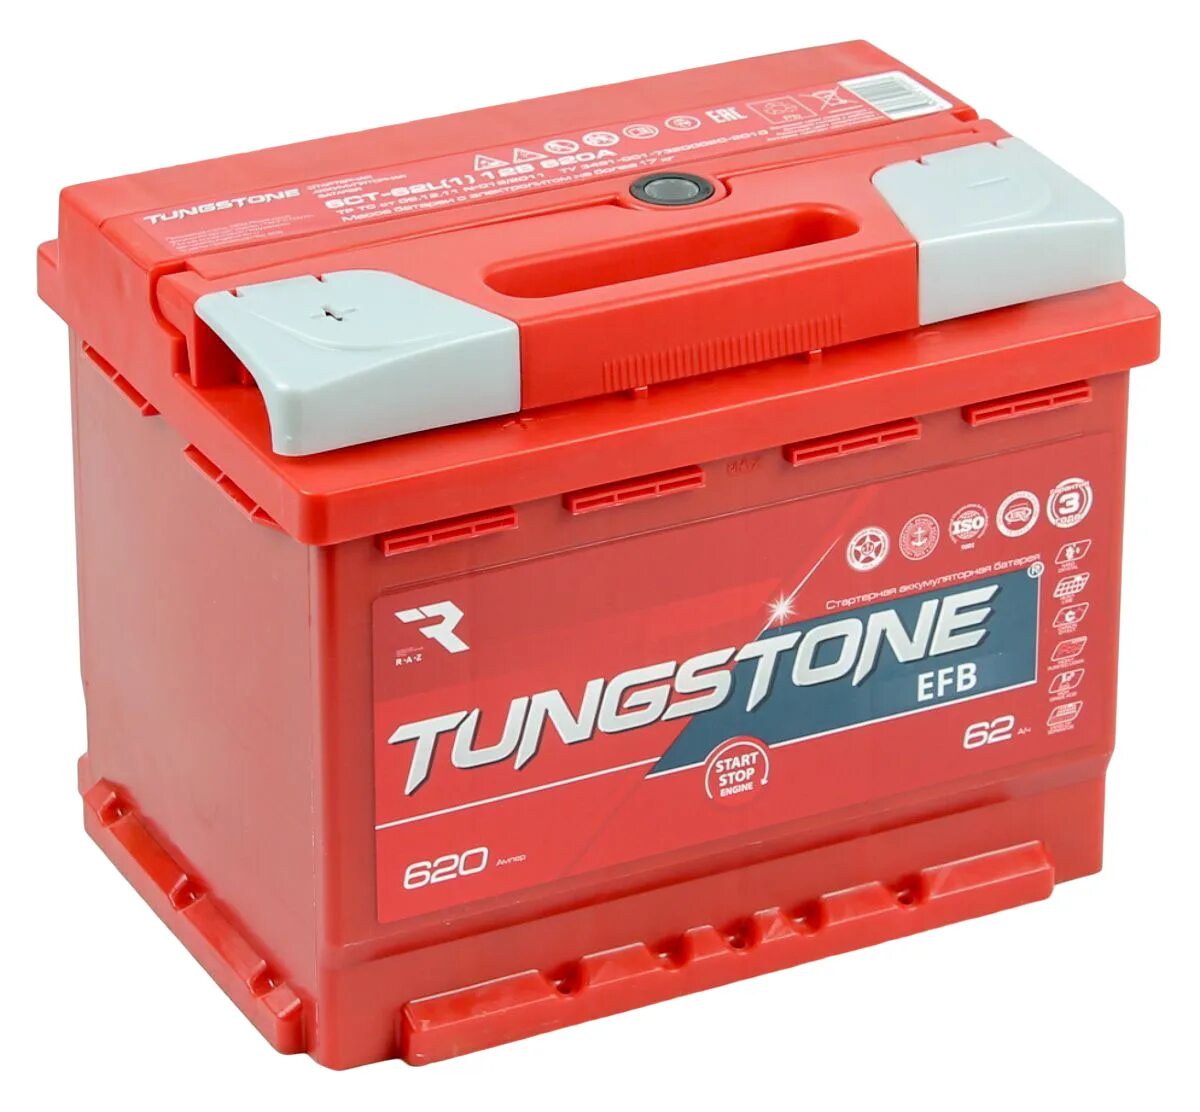 Аккумулятор автомобильный интернет. Tungstone EFB 6ст -77.0. Tungstone аккумуляторы 60 Ач. Tungstone EFB 6ст -62.0. EFB 6ct-60.0.